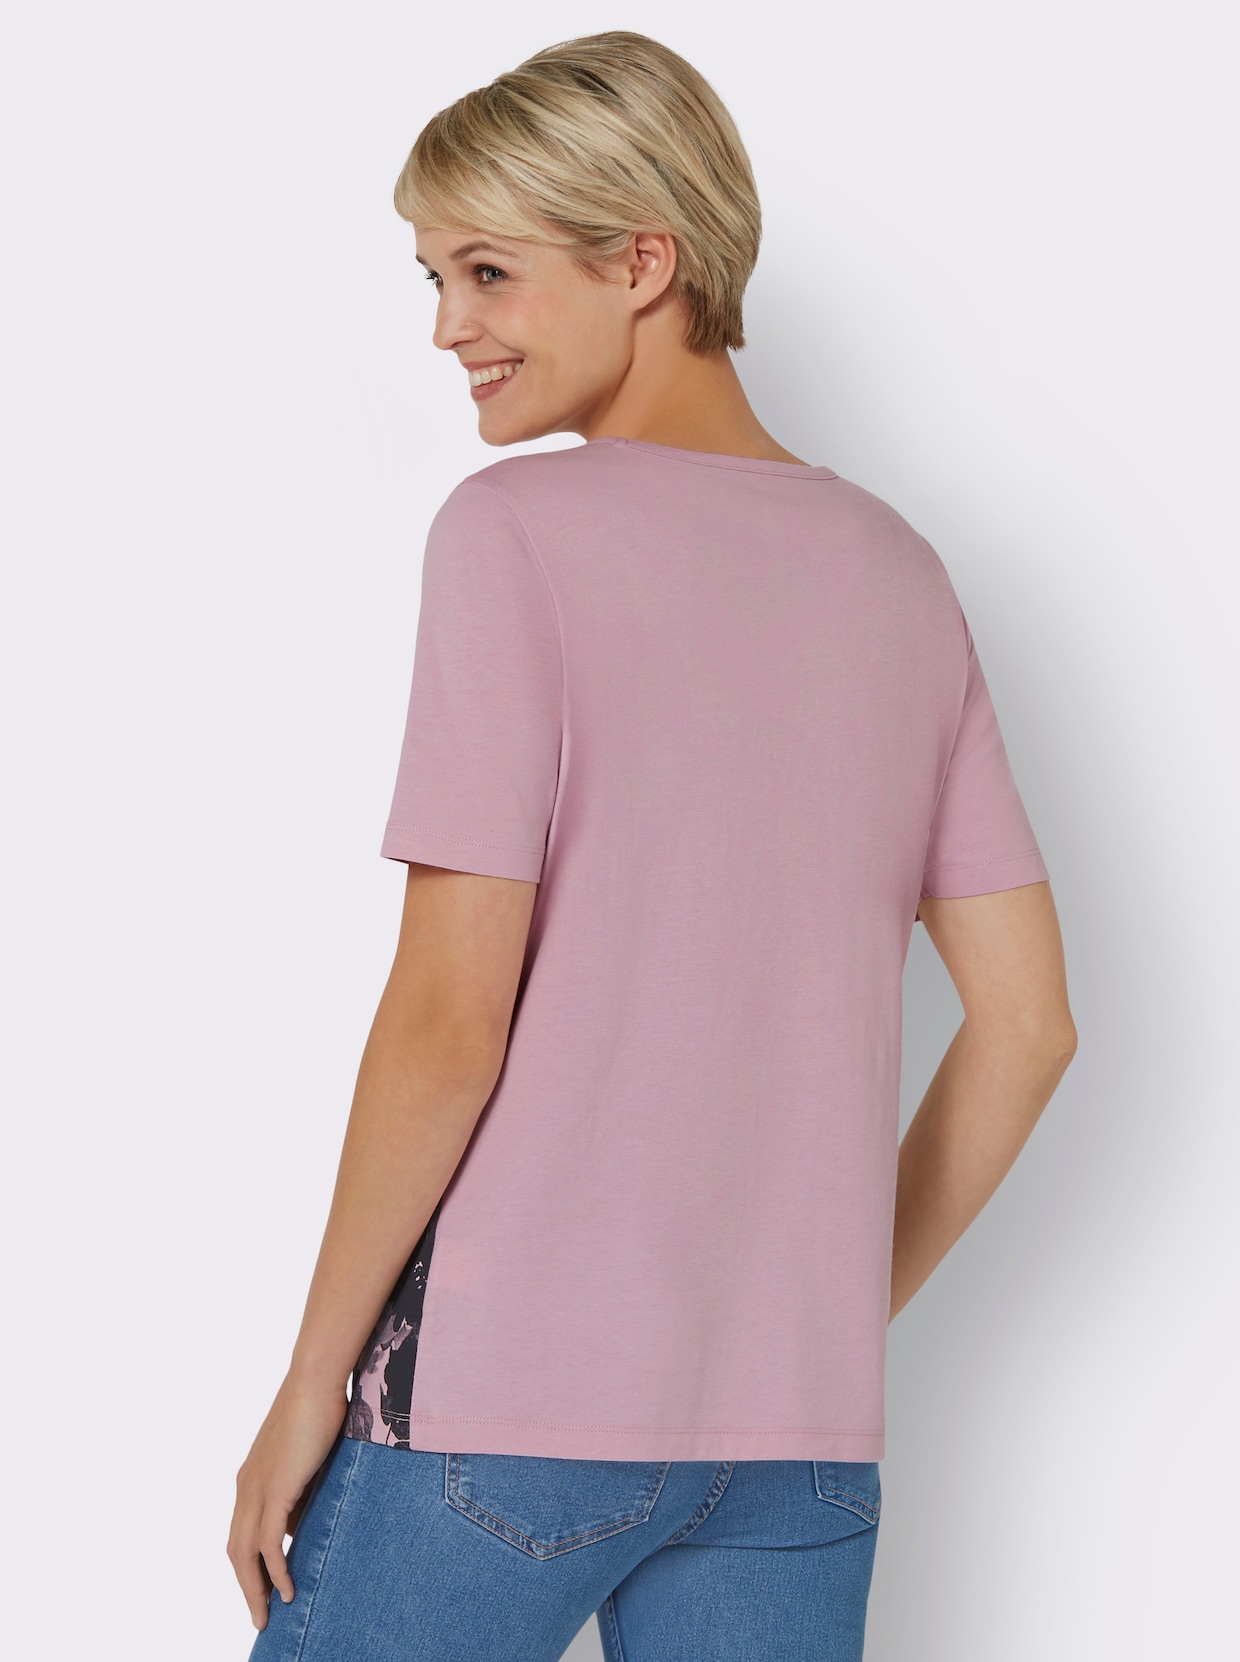 Tričko s krátkymi rukávmi - Ružové s potlačou